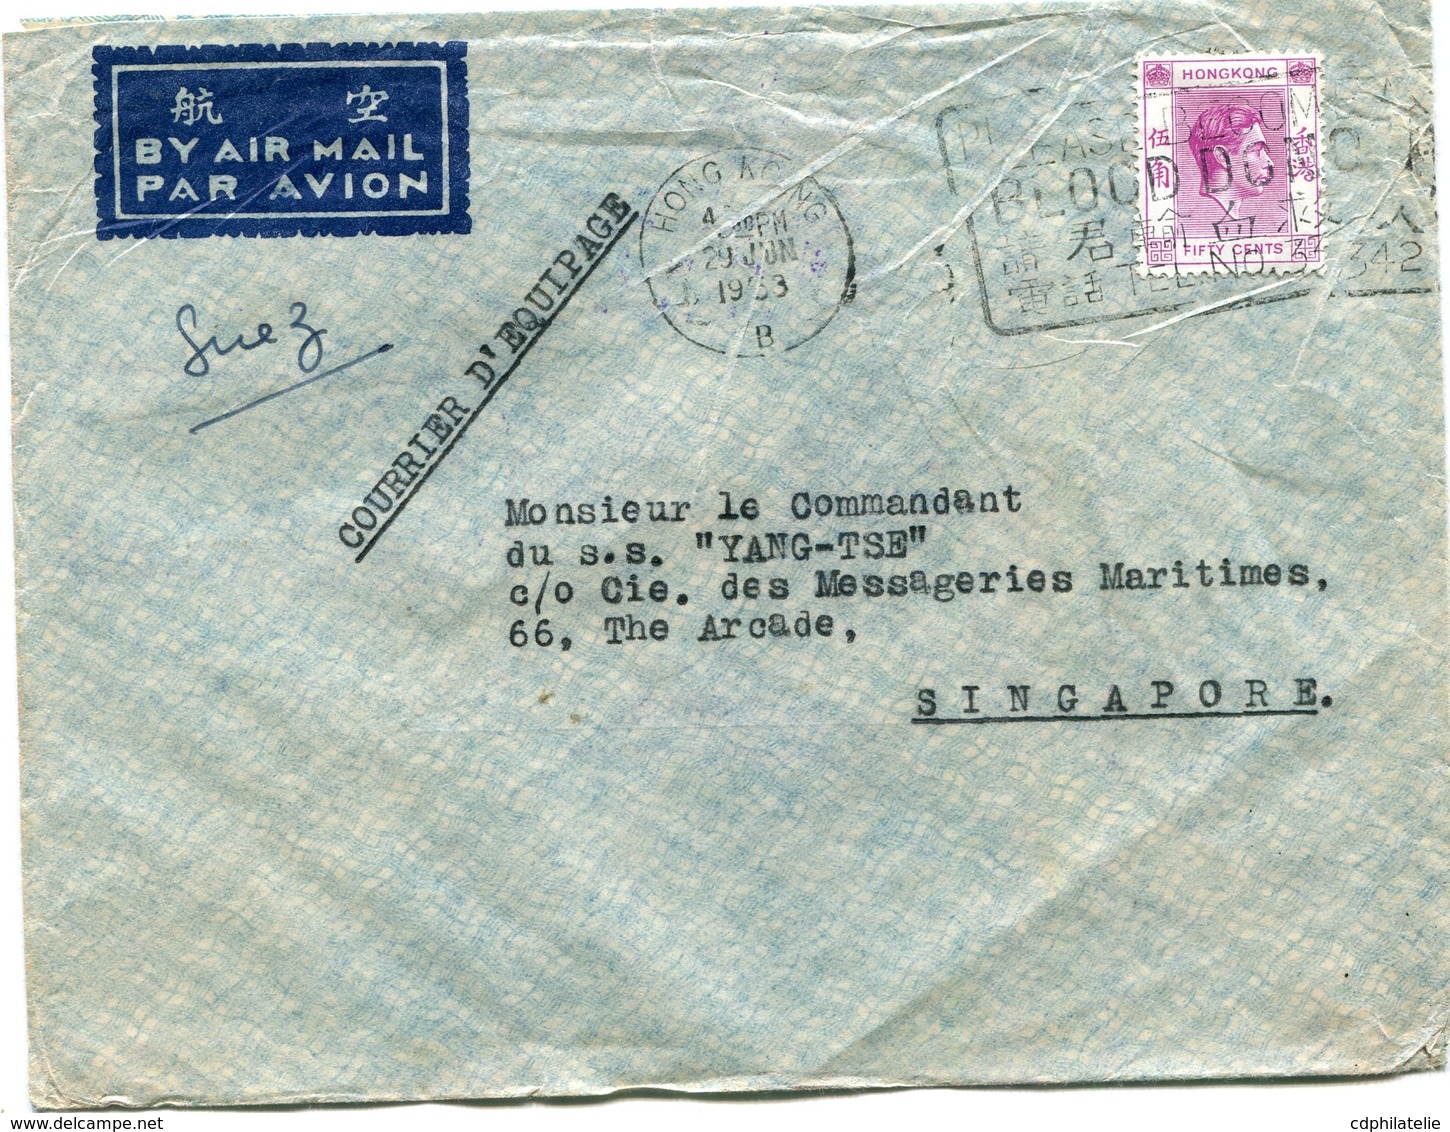 HONG KONG LETTRE PAR AVION DEPART HONG KONG 29 JUN 1953 POUR SINGAPOUR - Briefe U. Dokumente